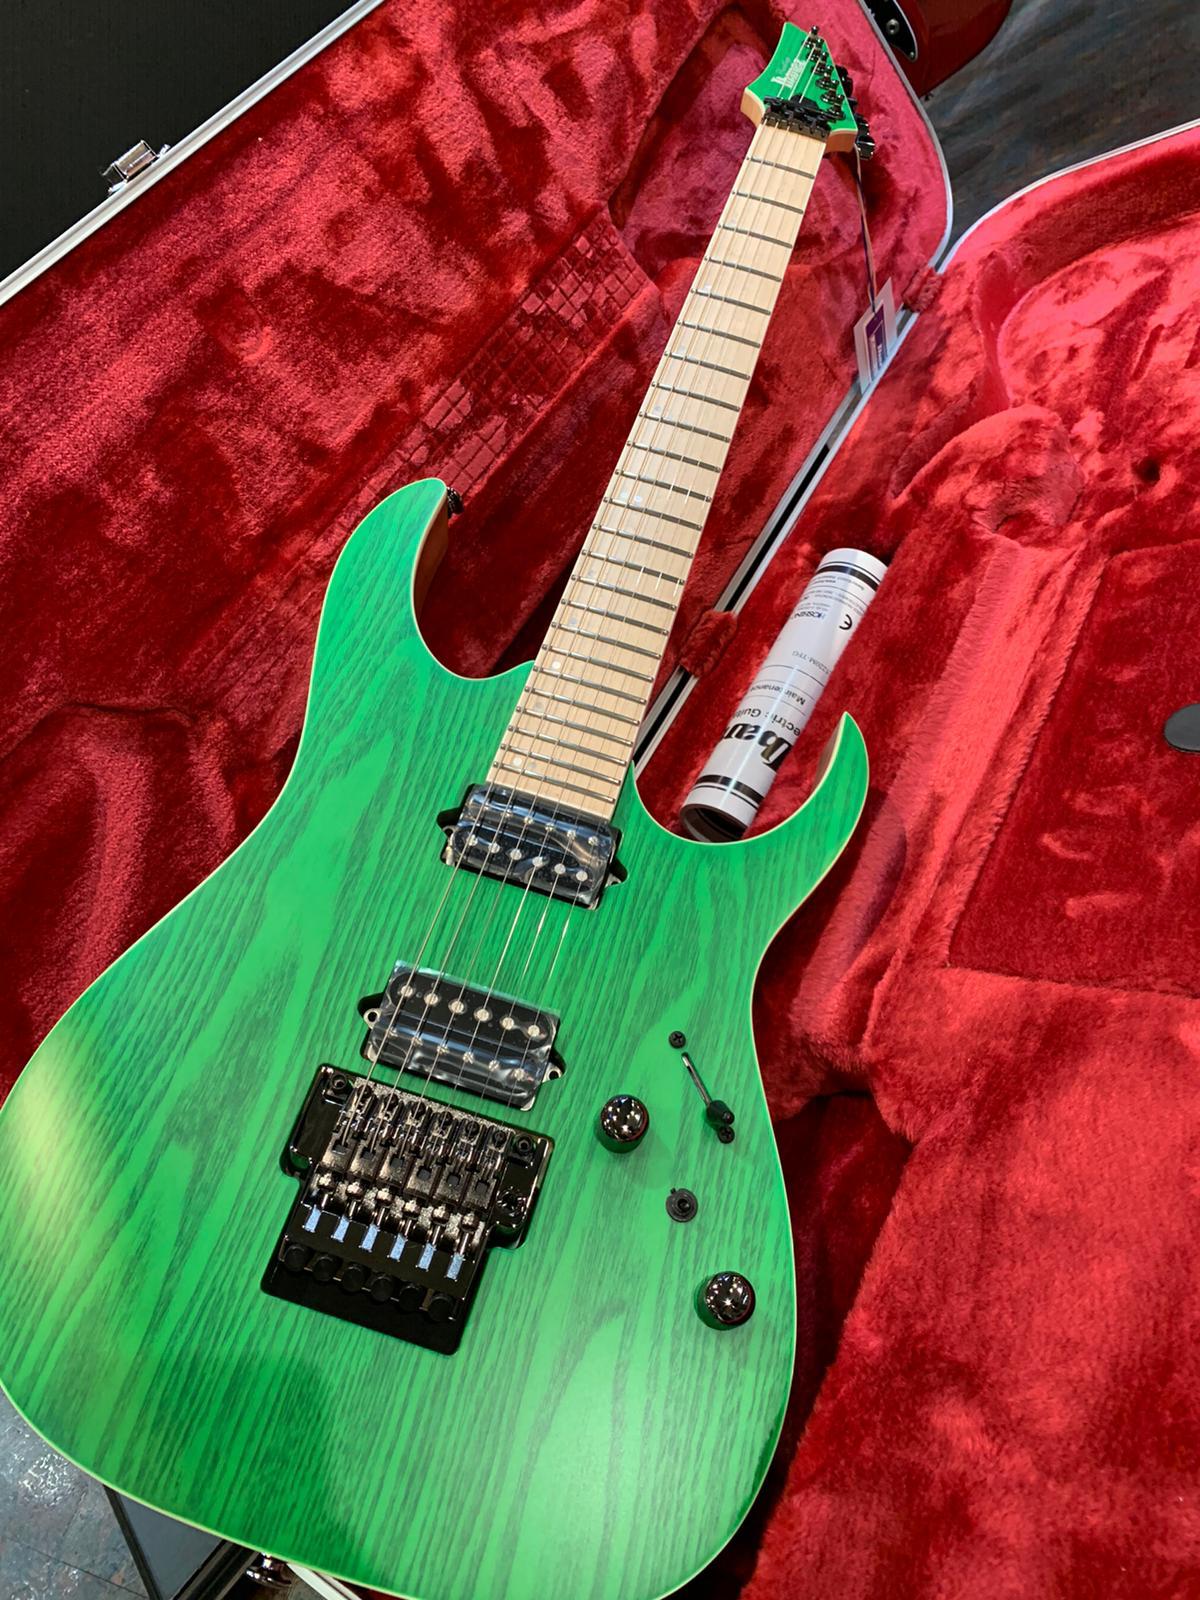 Ibanez Prestige RGR5220MTFG (Transparent Fluorescent Green) Japan Made Electric Guitar 電結他